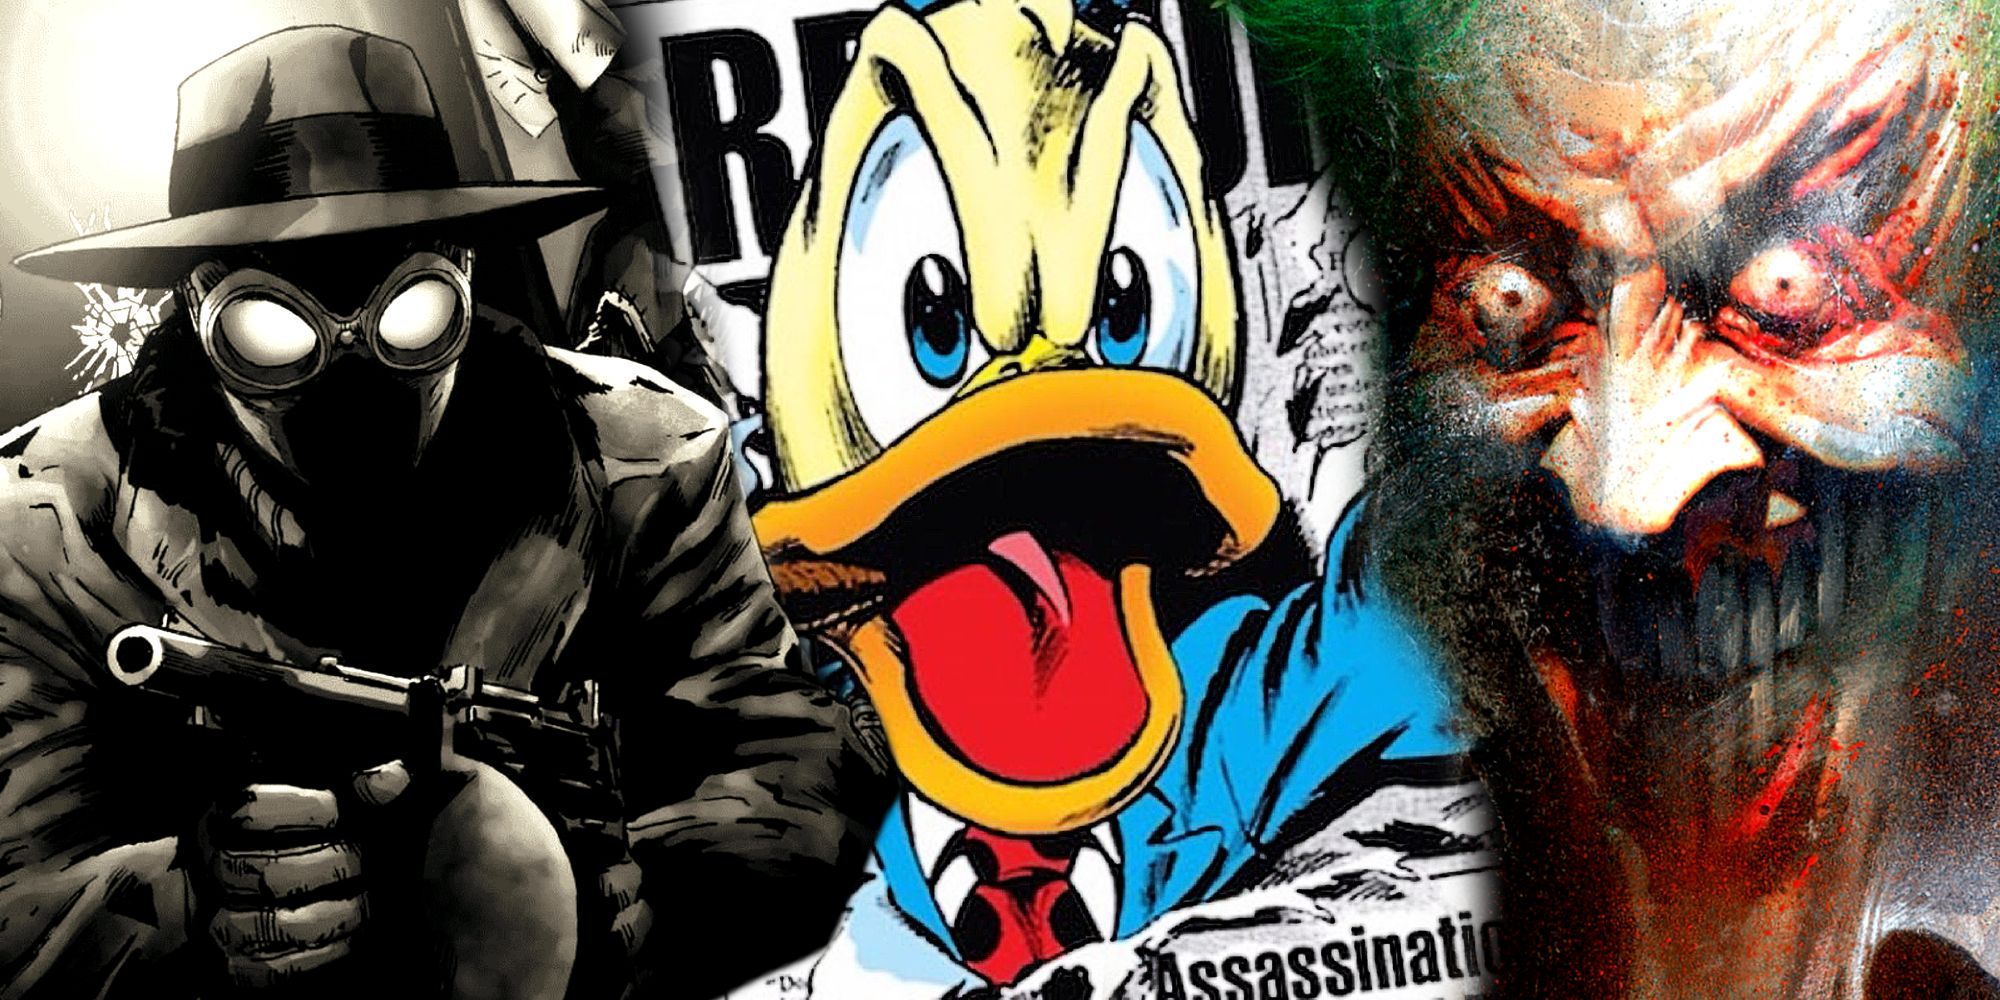 Spider-Man Noir, Howard the Duck, and Joker Comics